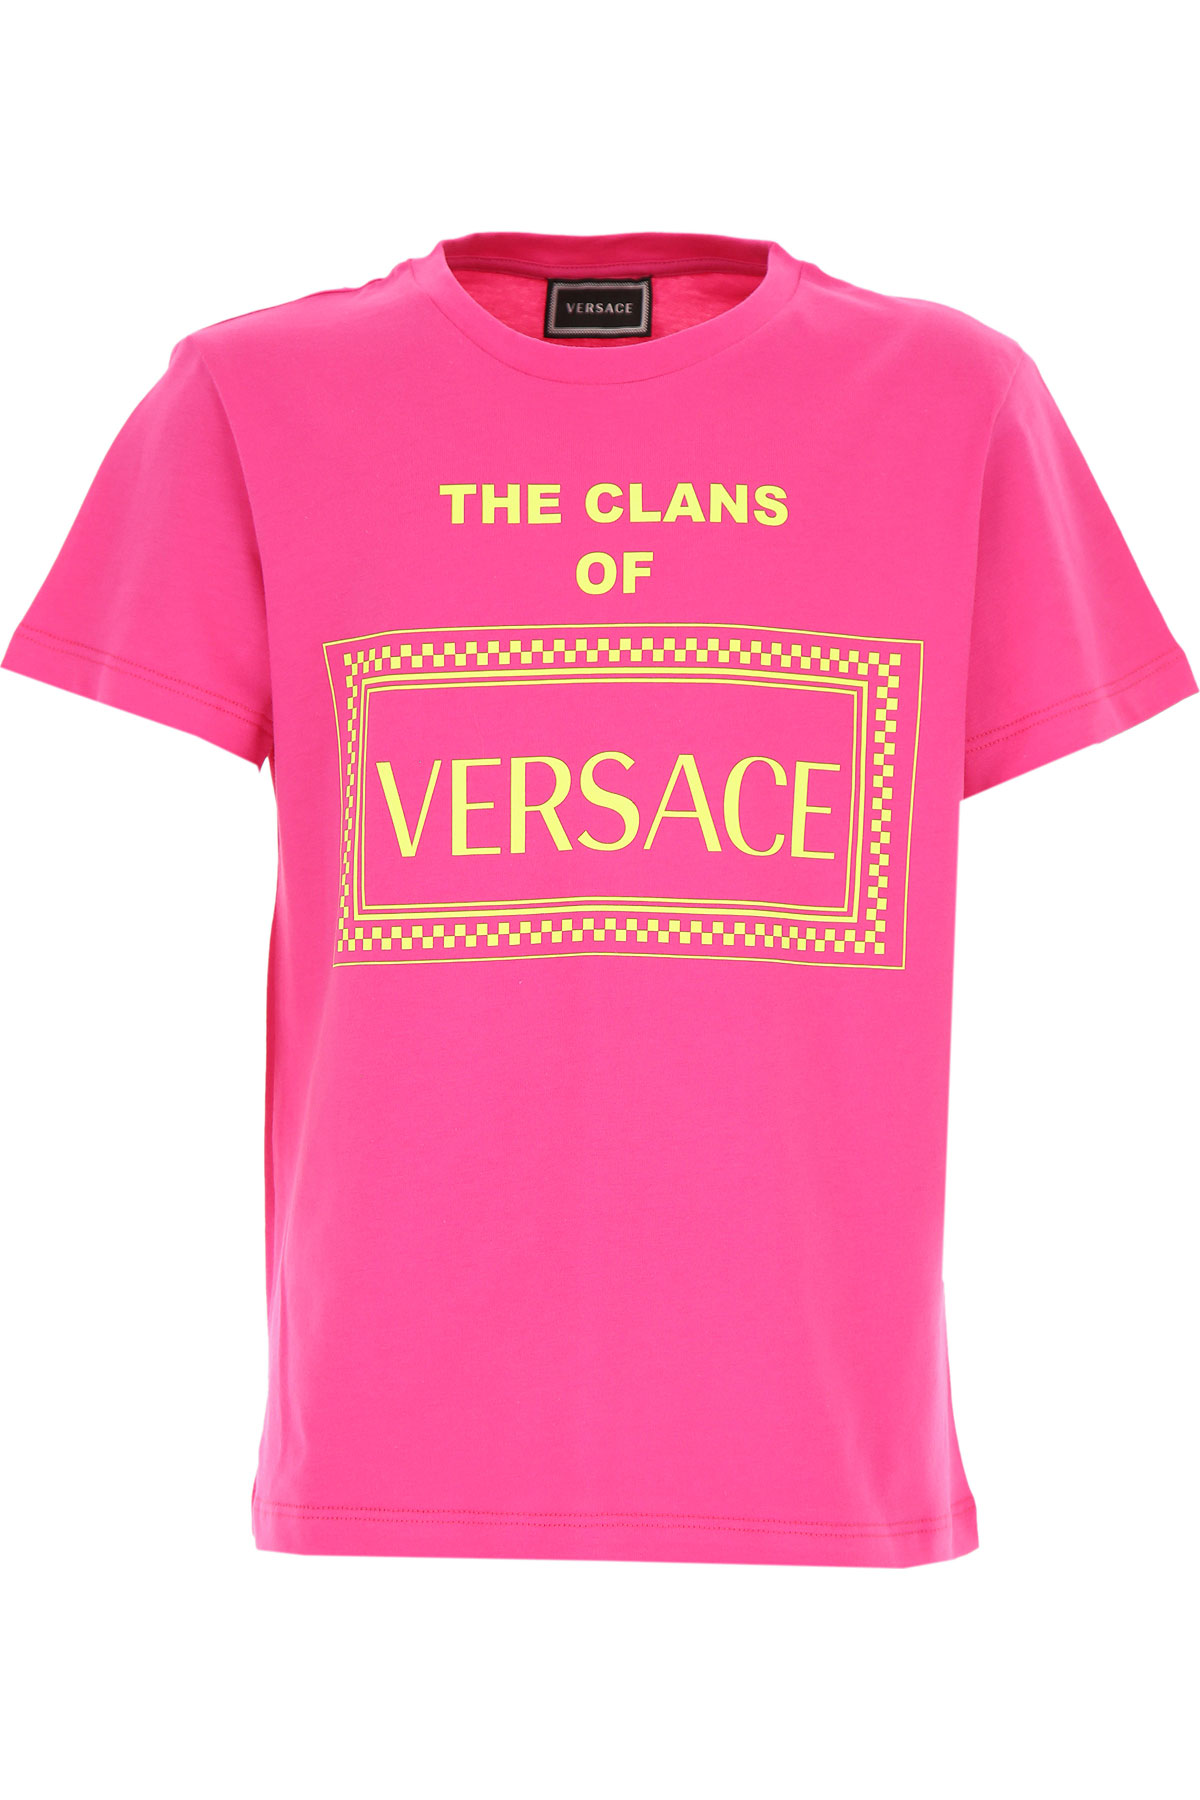 Versace Kinder T-Shirt für Mädchen Günstig im Sale, Fuchsienfarbig, Fuchsie, Baumwolle, 2017, 10Y 12Y 14Y 8Y